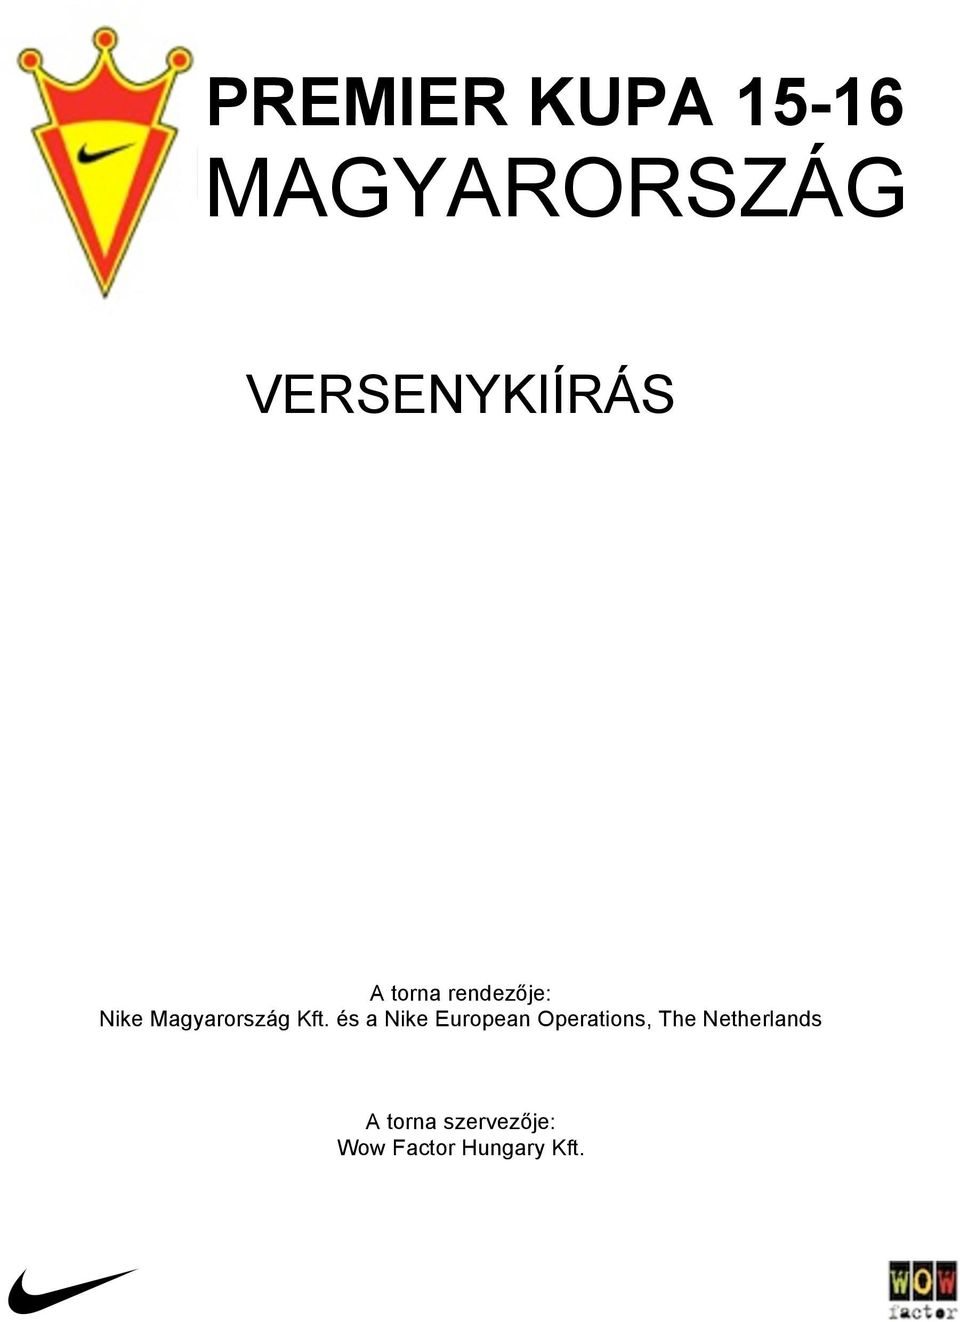 Magyarország Kft.